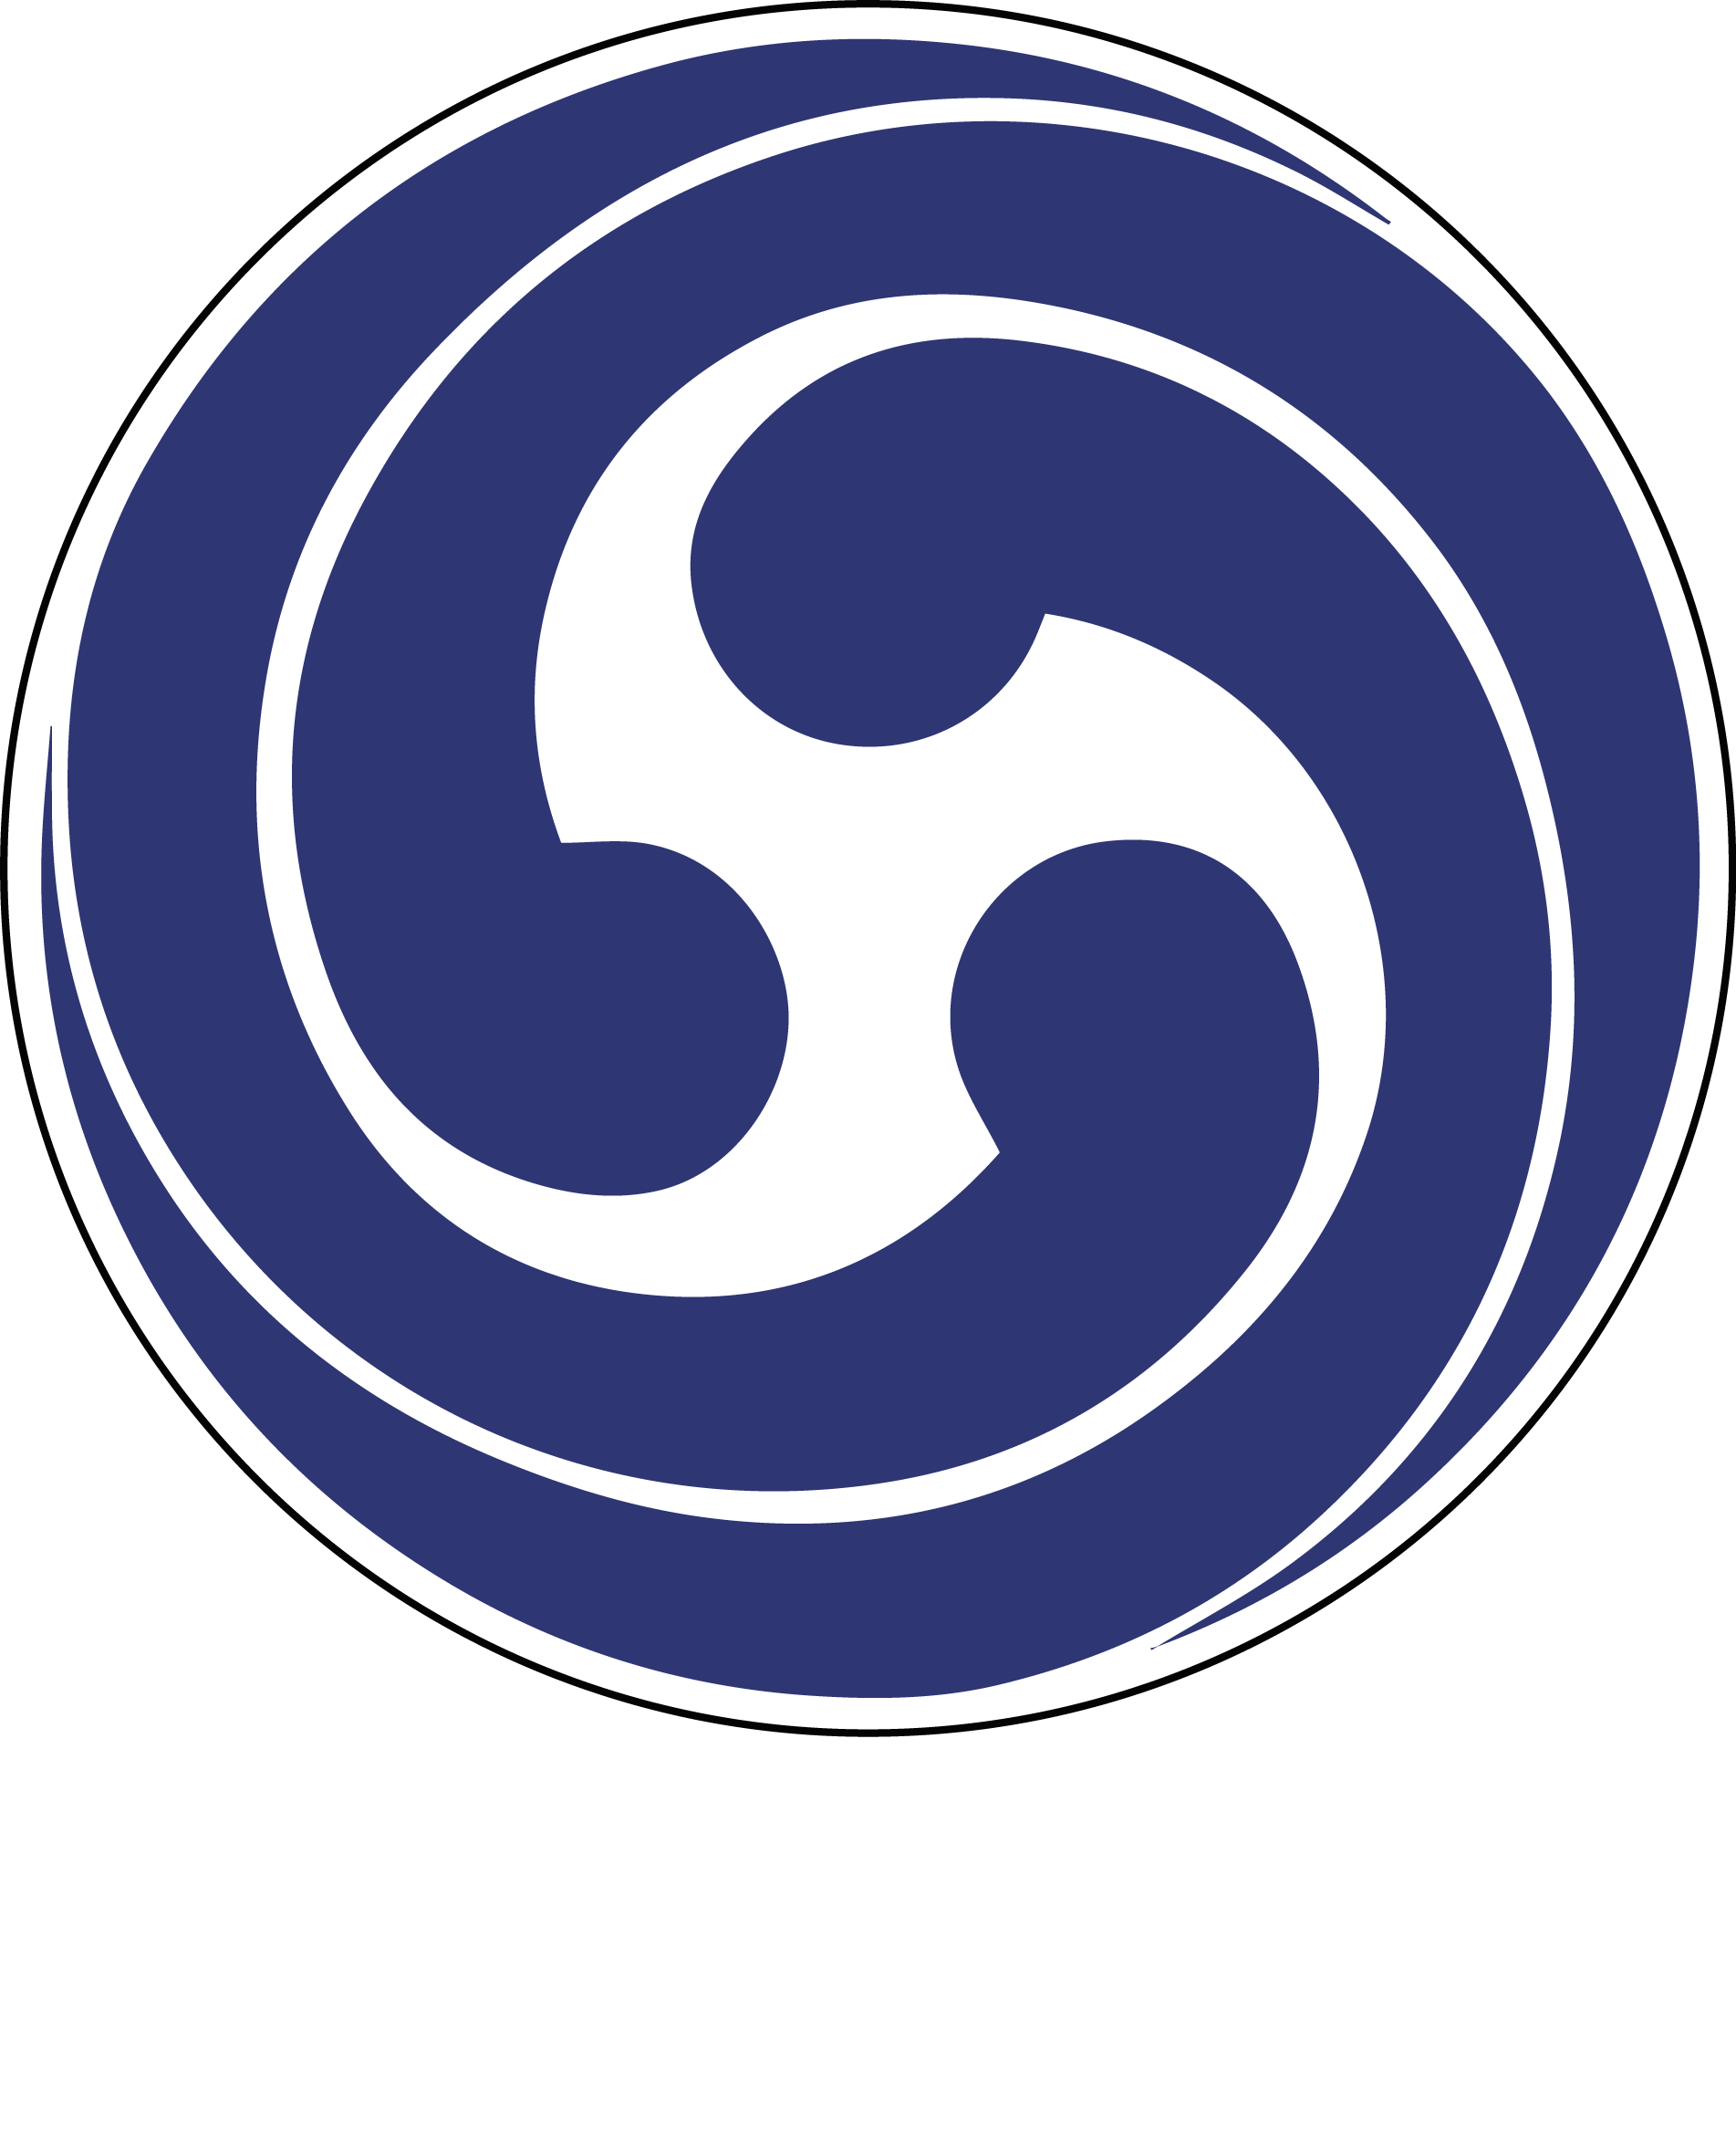 Azione Cosplay Prato